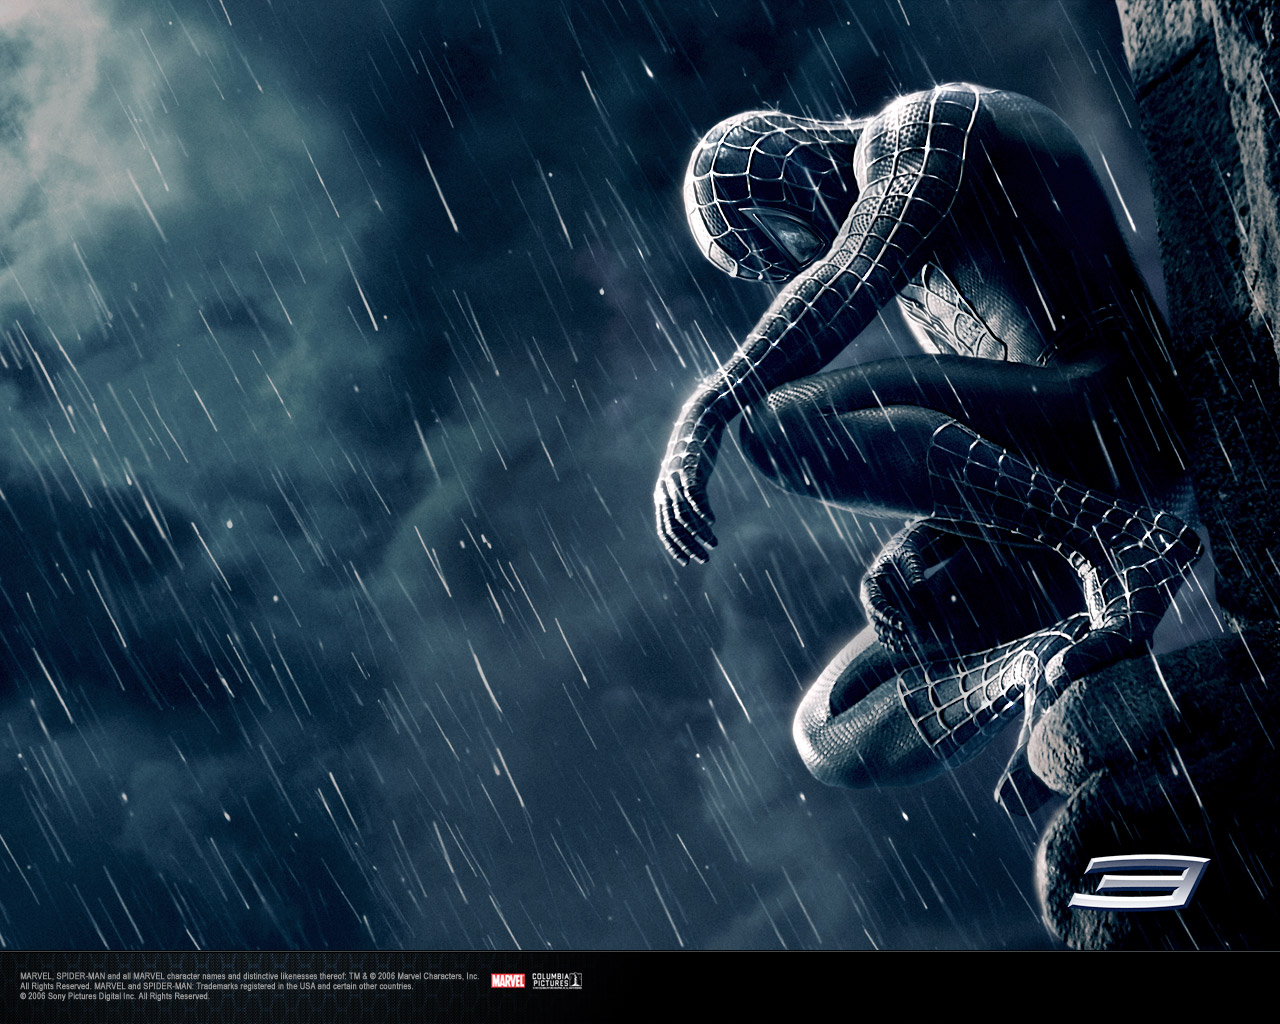 http://1.bp.blogspot.com/-oq29sIUhc_Q/Tawp6Ai6B_I/AAAAAAAAC80/peZVrVMaKuI/s1600/Spiderman+wallpaper+download+free+spiderman+3.jpg